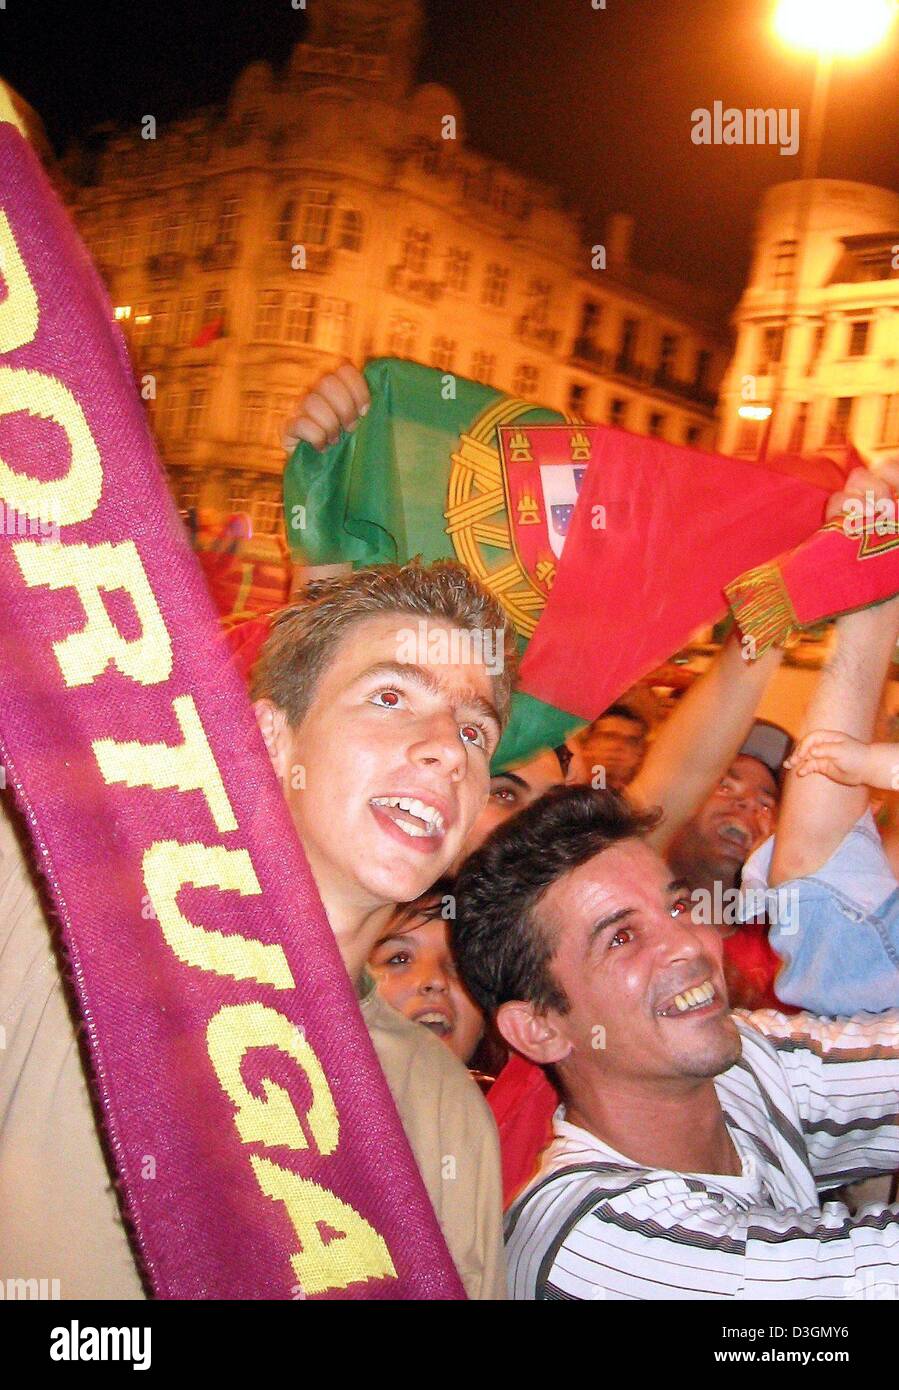 (Dpa) - Portugais fans cheer et jubilate dans les rues de Porto, Portugal, 24 juin 2004, après le Portugal a remporté l'Euro 2004 Football match de quart de finale contre l'Angleterre sur la sanction. Banque D'Images